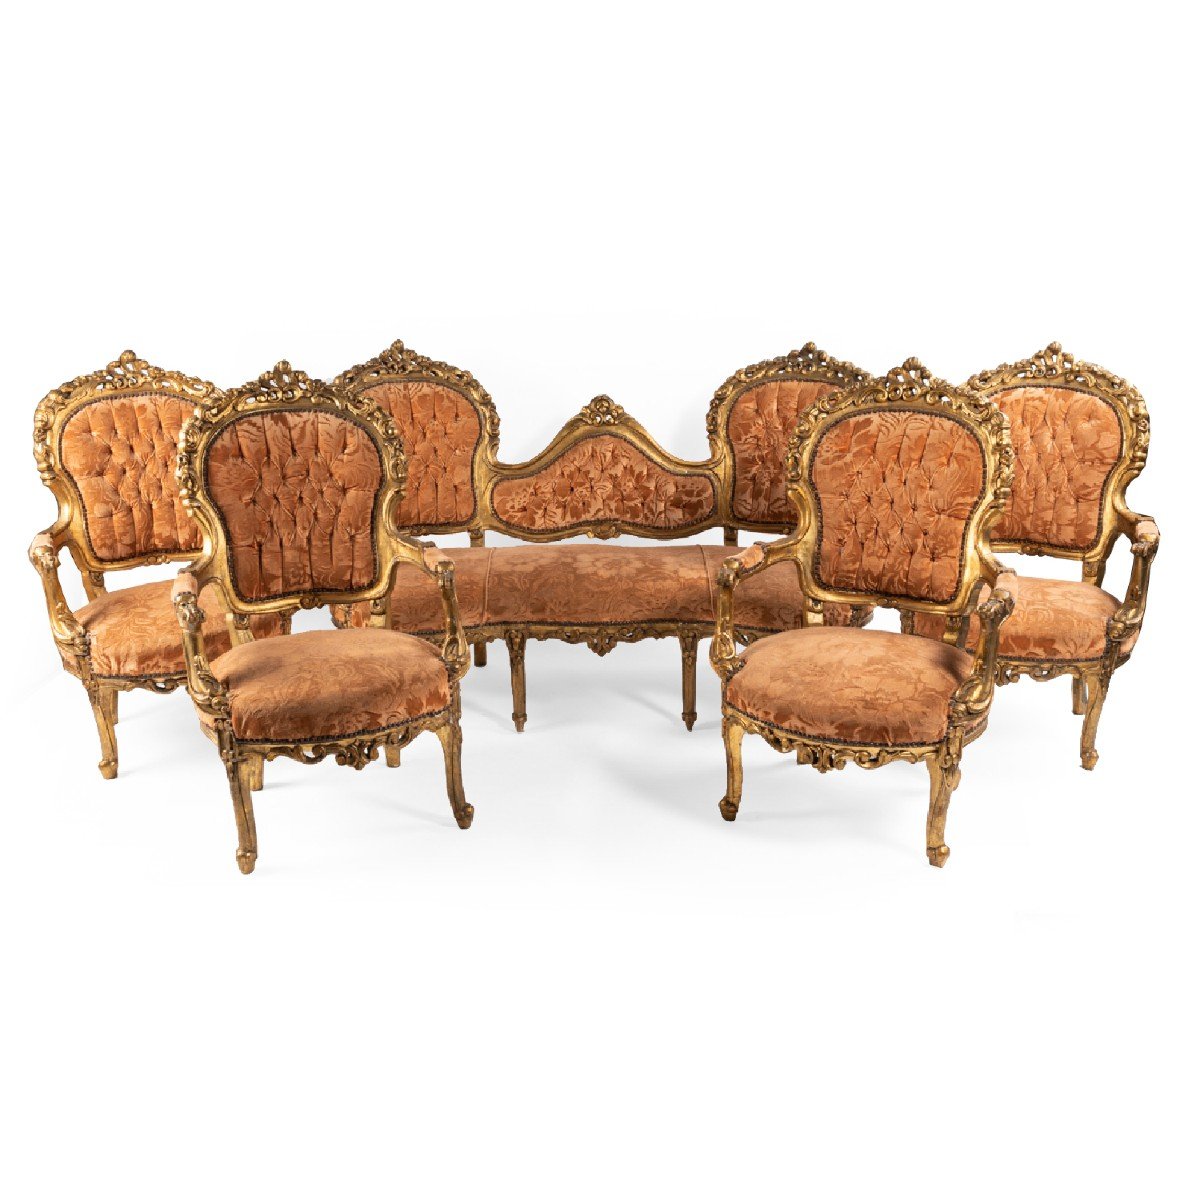 Salon composé d'une banquette et 4 fauteuils en bois doré, XXe